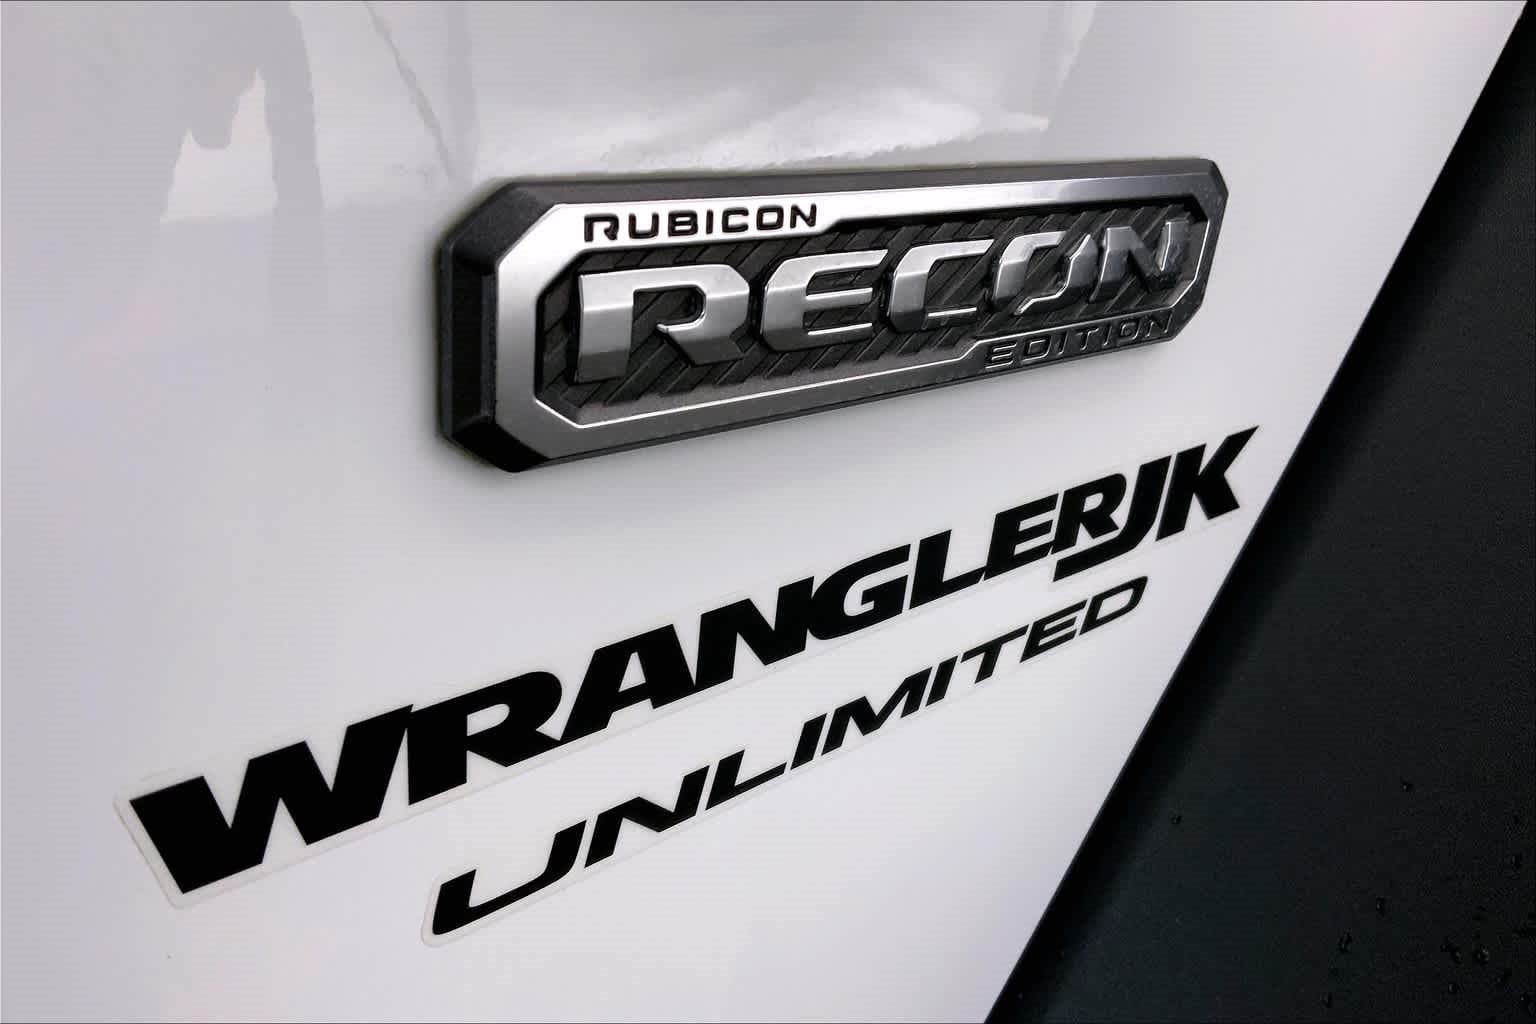 2018 Jeep Wrangler Unlimited Rubicon Recon